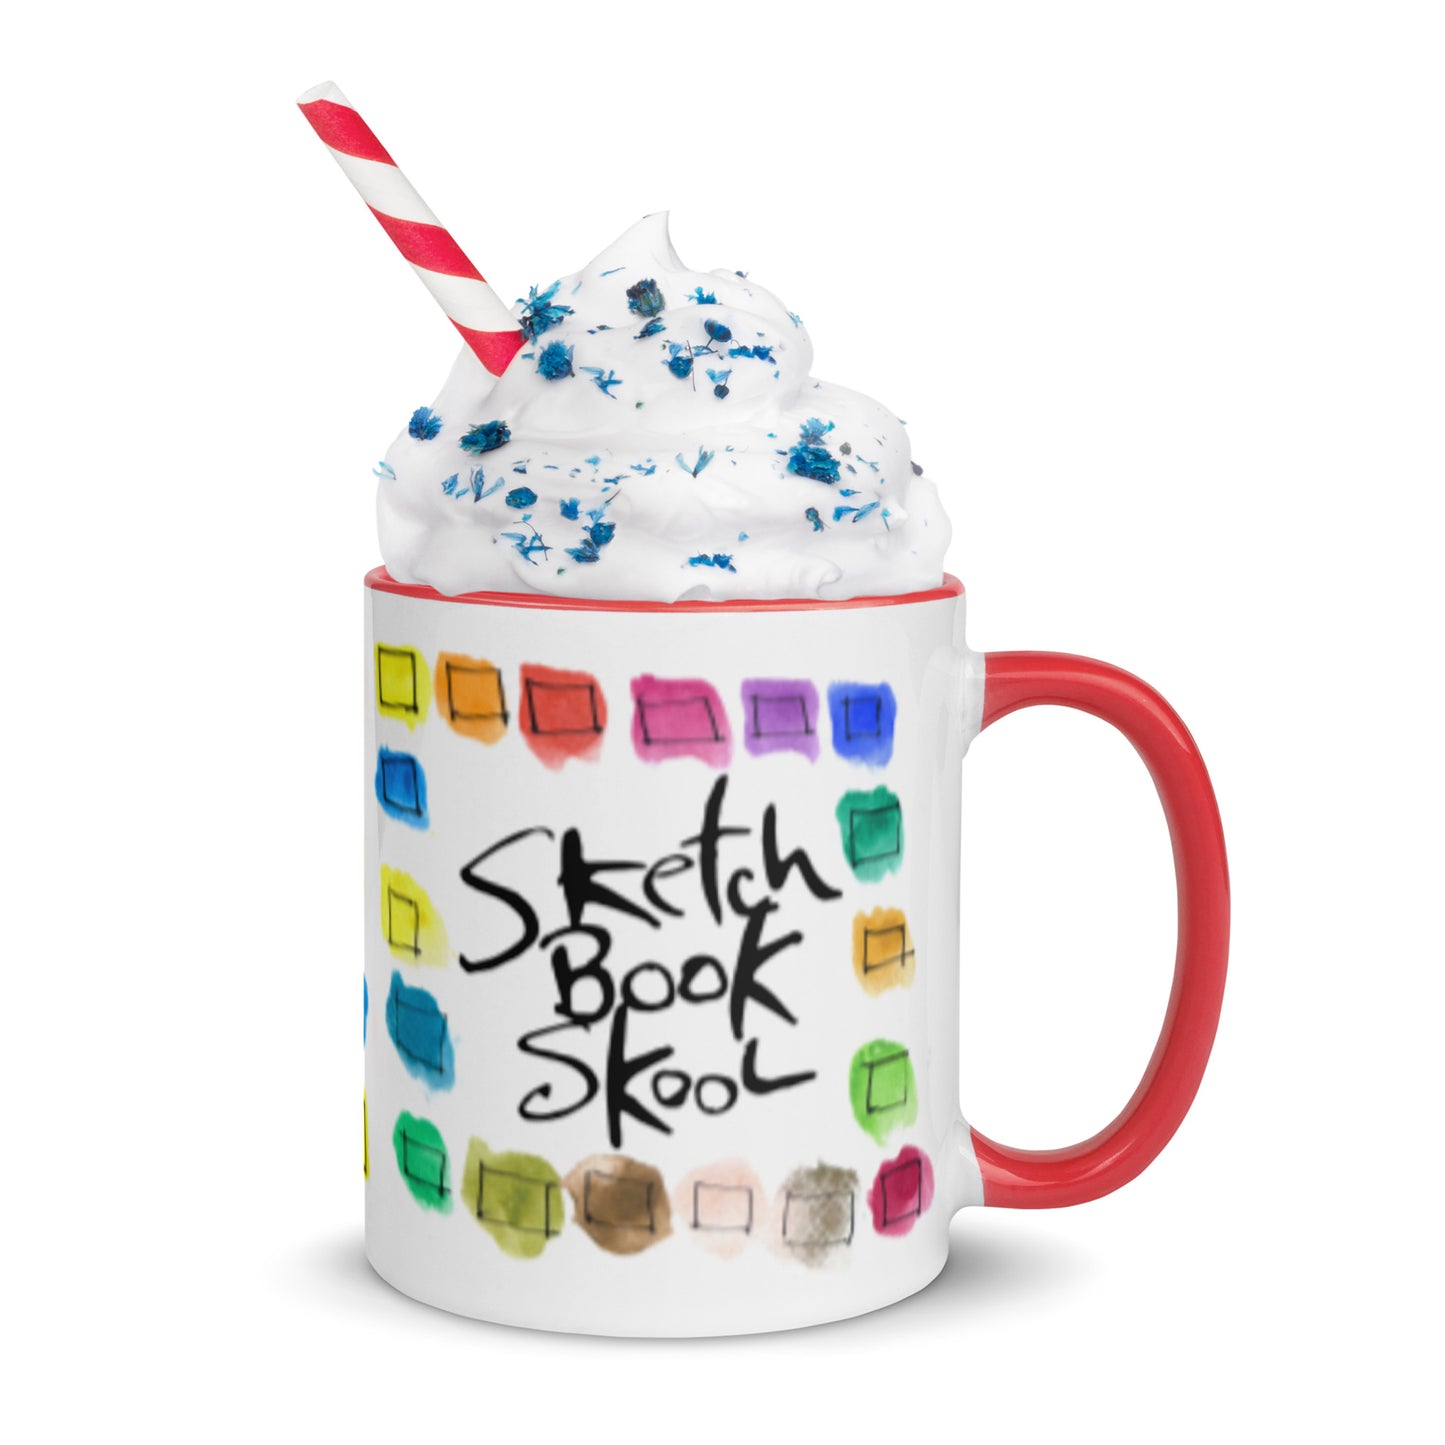 Sketchbook Skool Swatch Mug